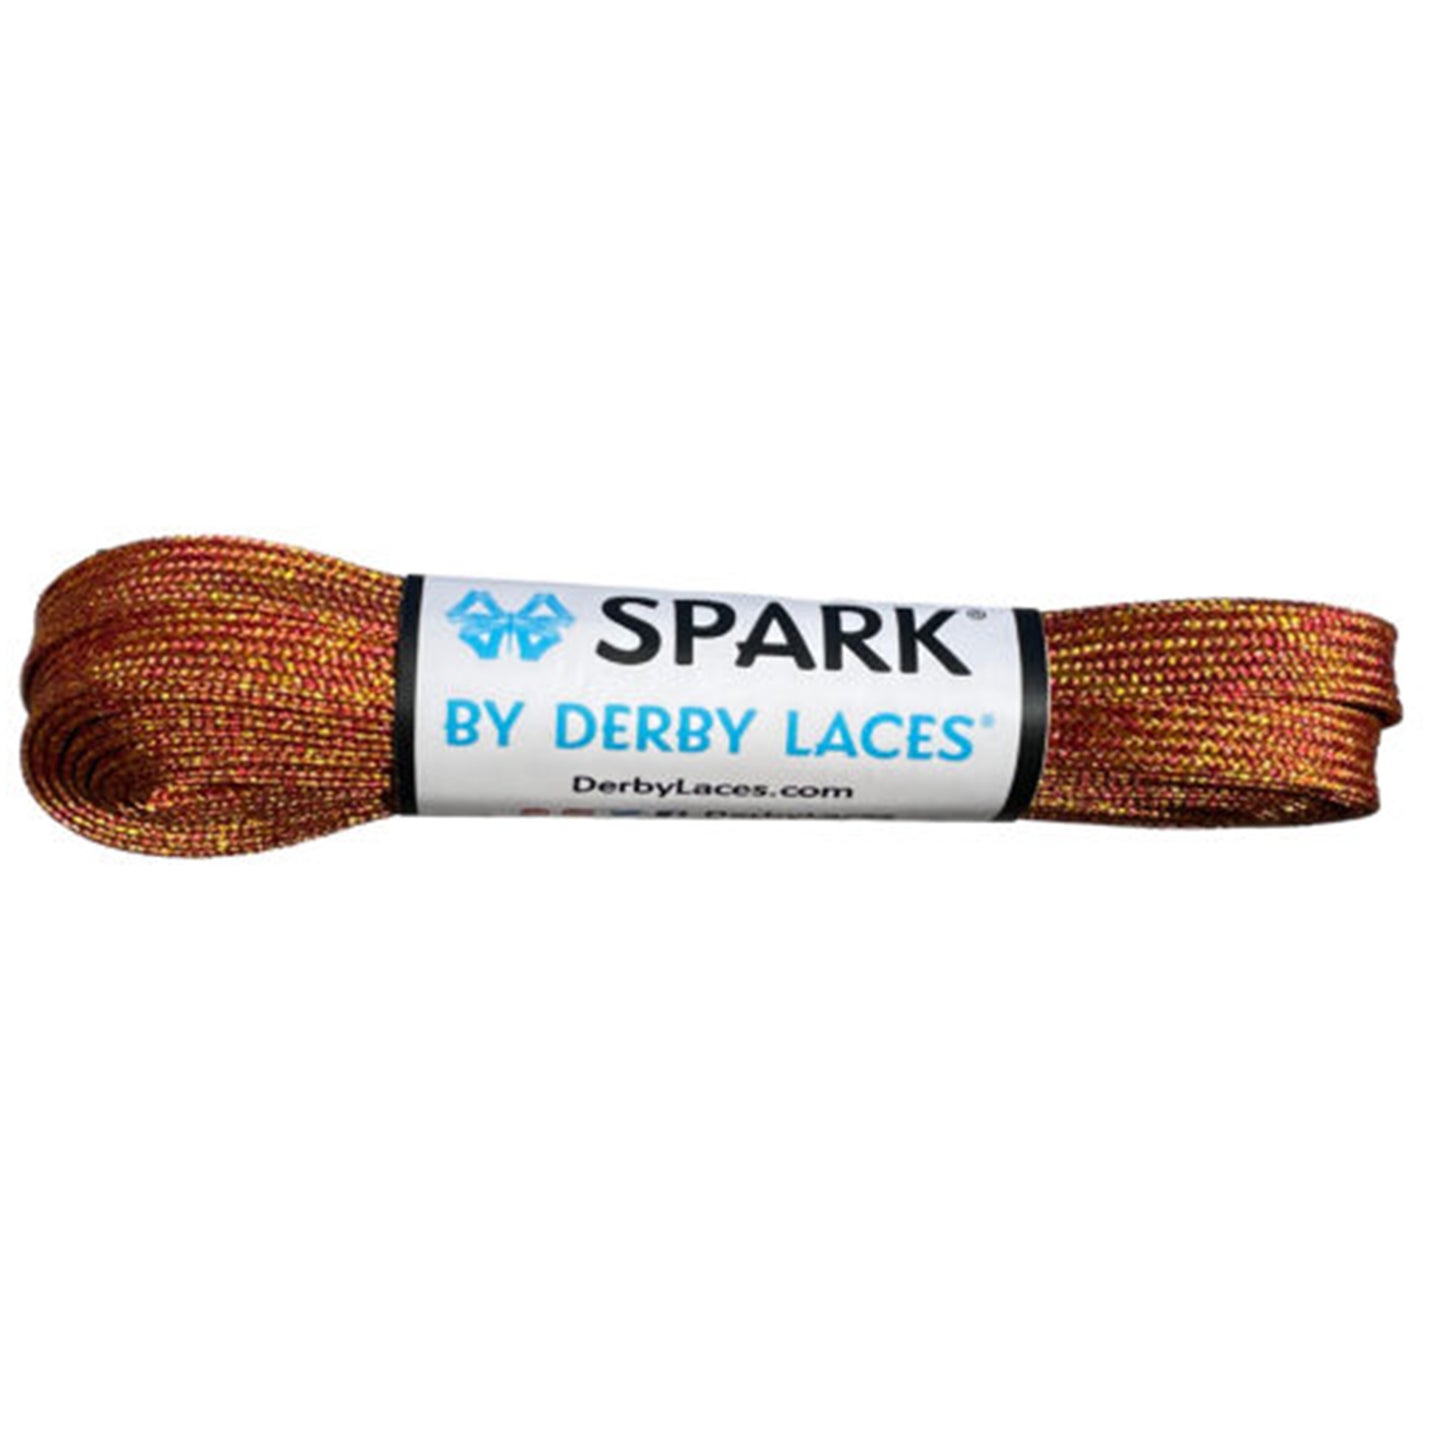 Lacci Derby Laces Sunburst Spark - 96" / 244cm - Sunburst SPARK Effetto metallico